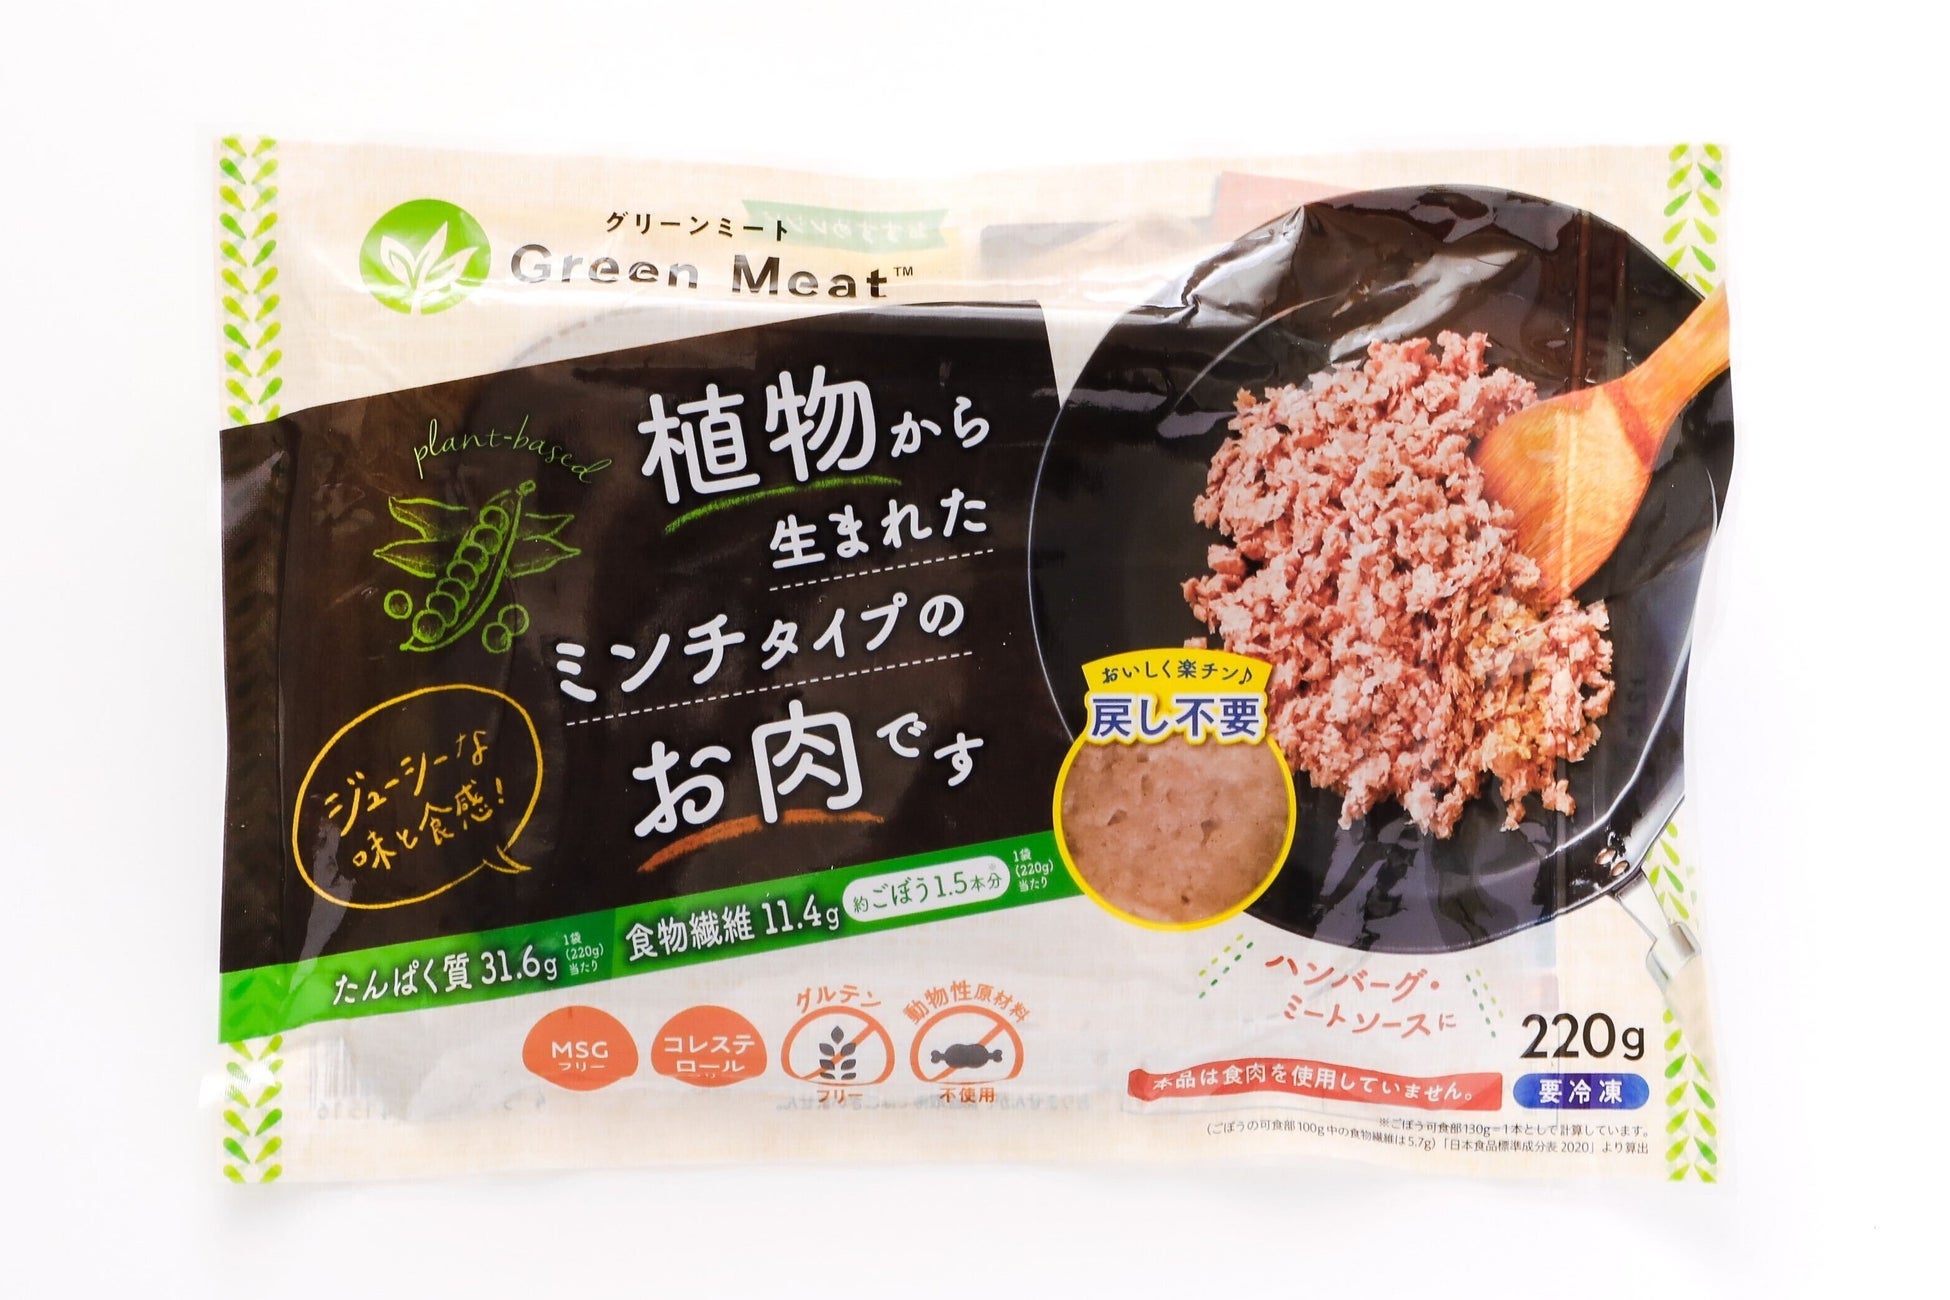 グリーンカルチャー開発・動物性原料不使用の植物肉「Green Meat™」一般販売を本格的に開始のサブ画像2